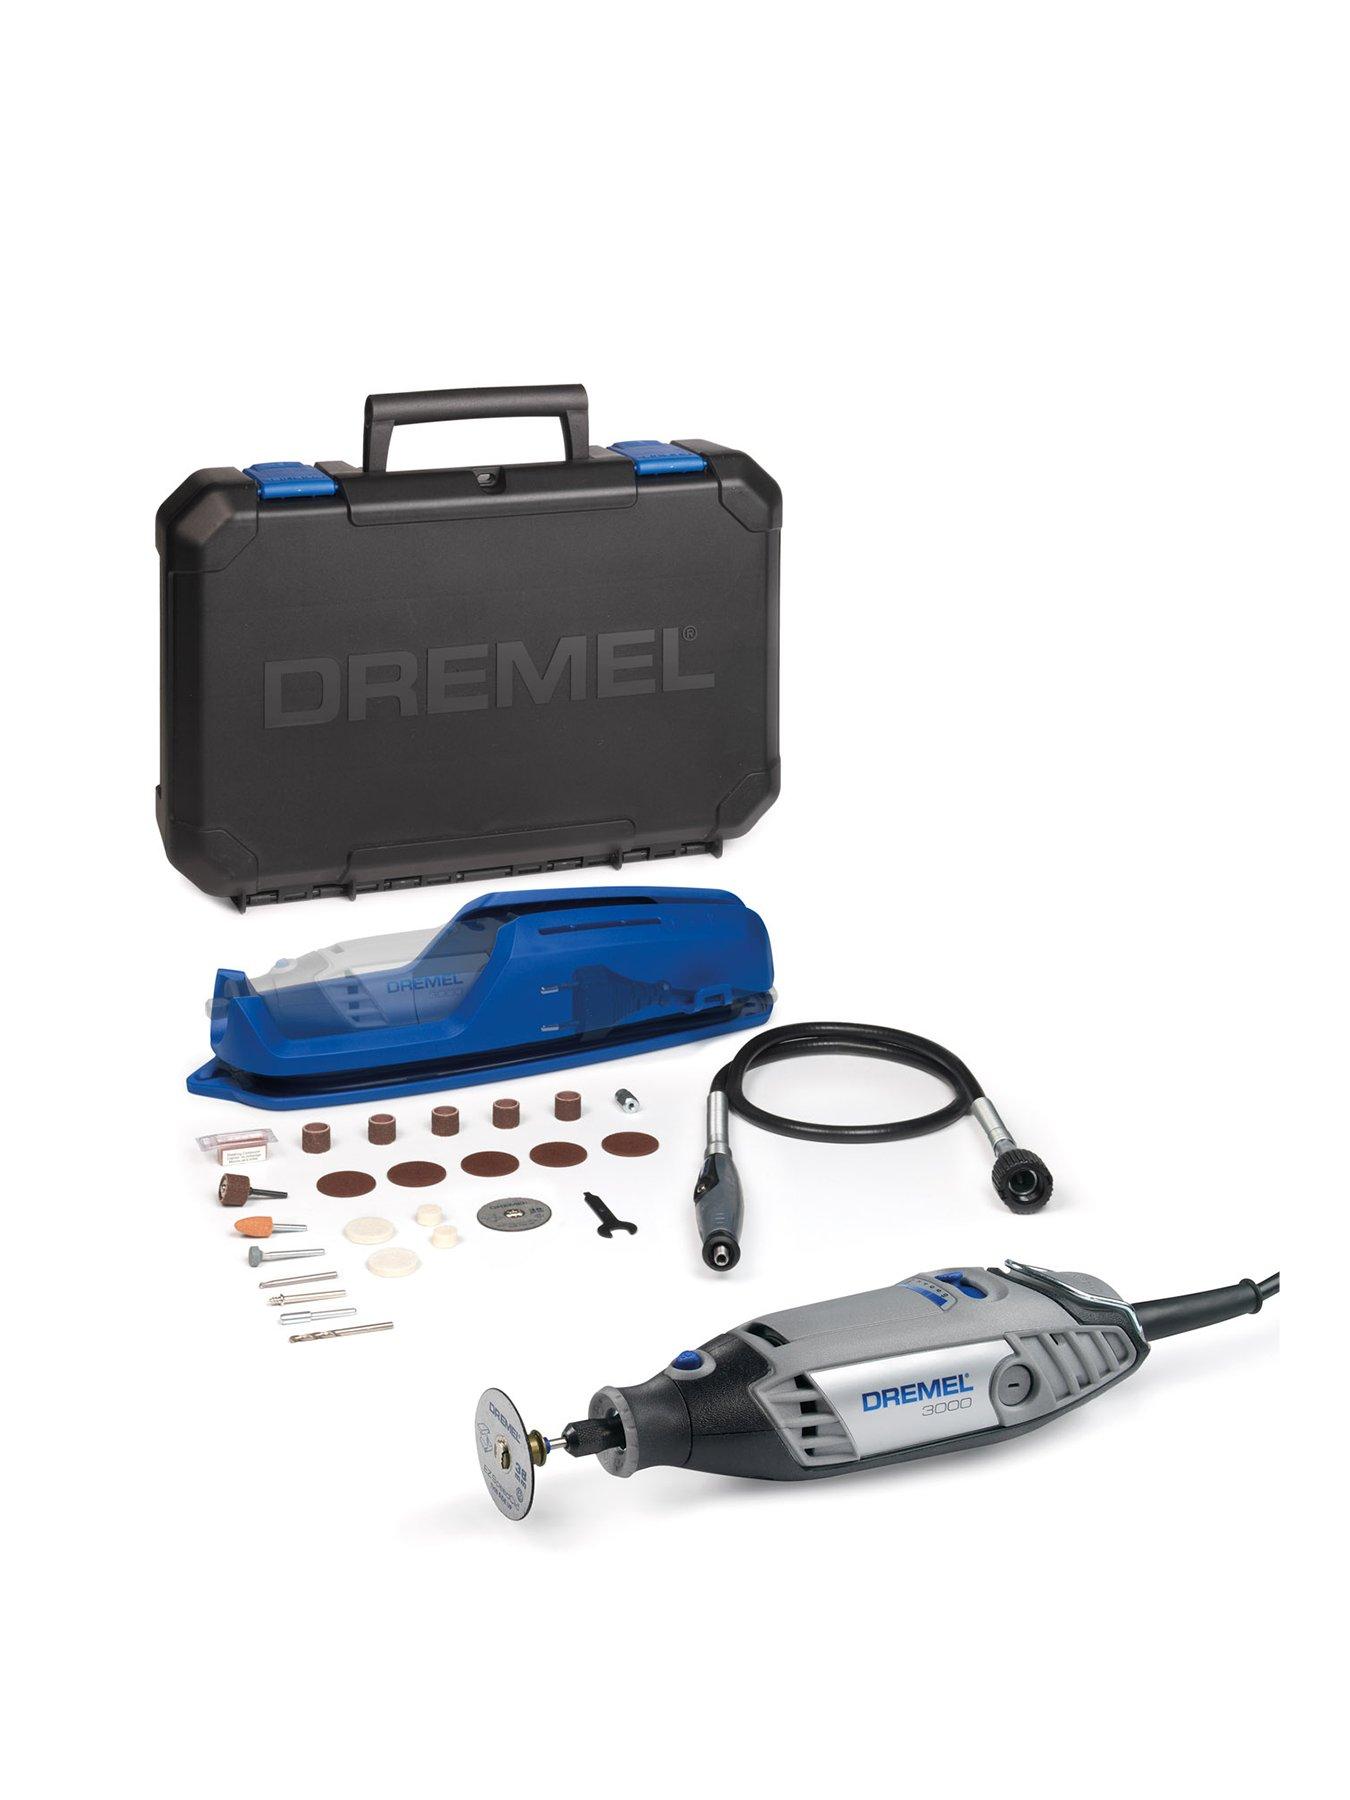 Dremel 3000-1/25 Multi-Tool Kit, Ez Wrap Case